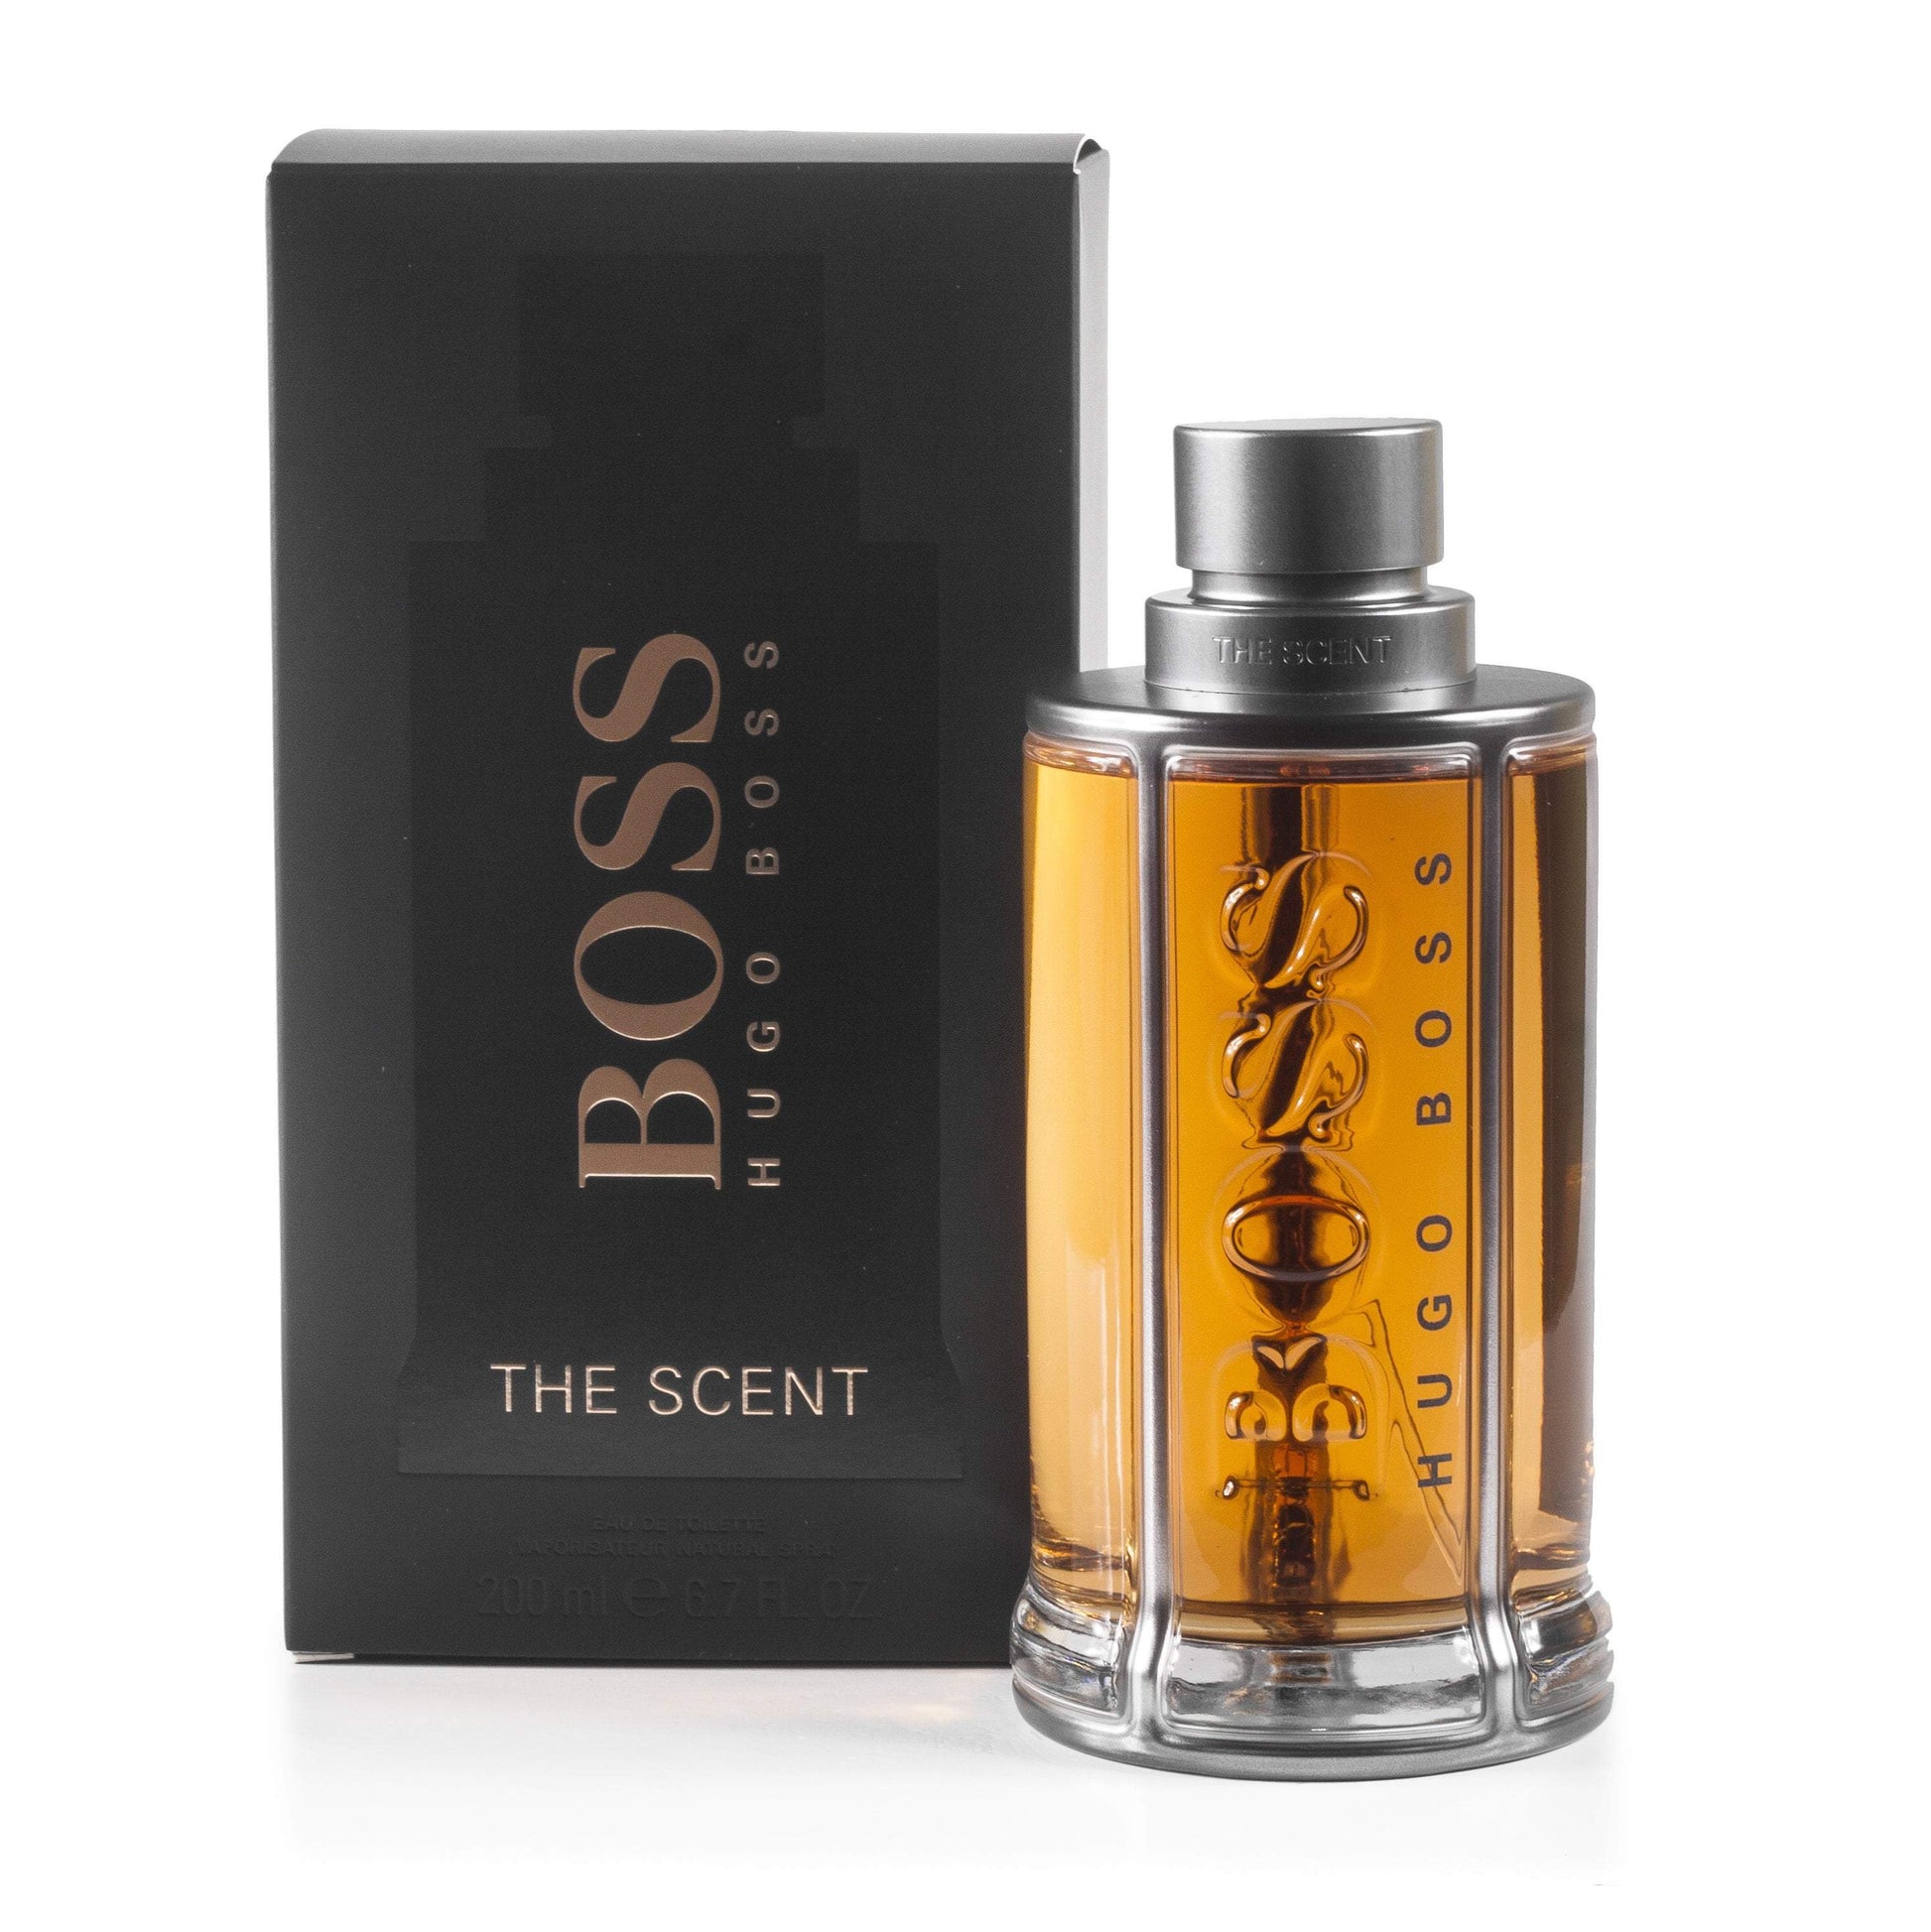 The Scent Eau de Toilette Spray for Men by Hugo Boss, Product image 2